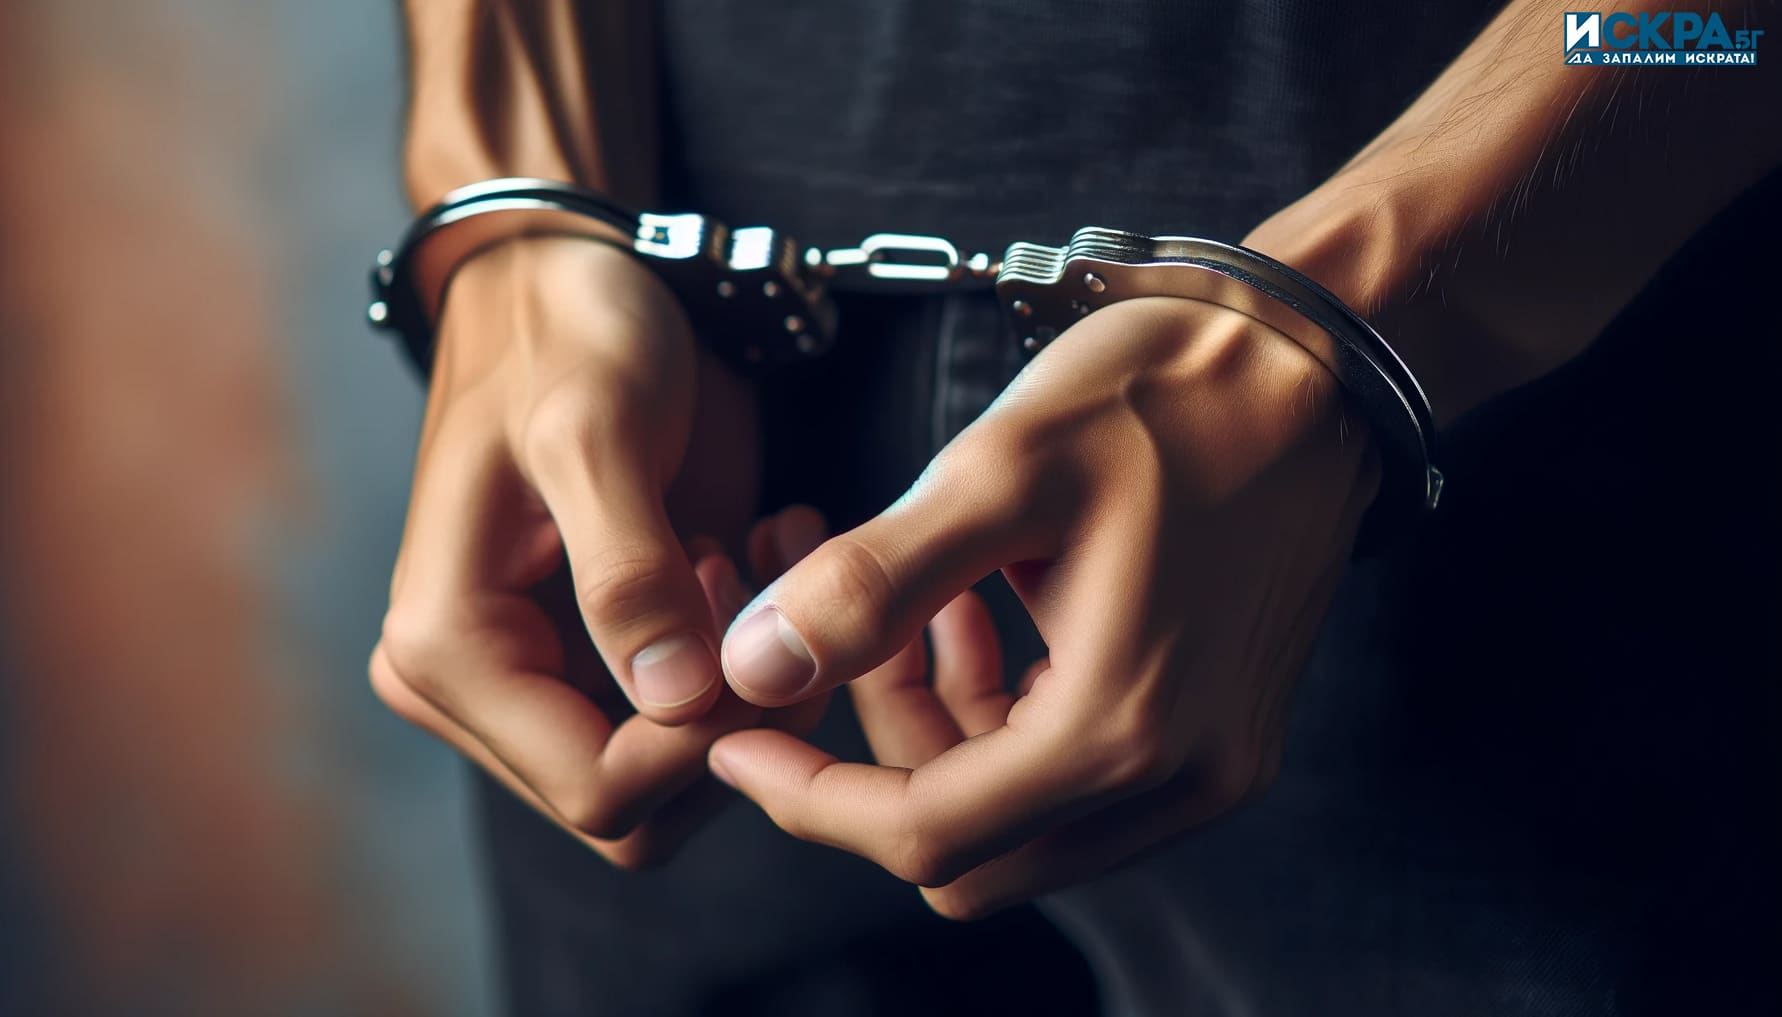 24 годишен криминално проявен и осъждан помориец с множество кражби зад